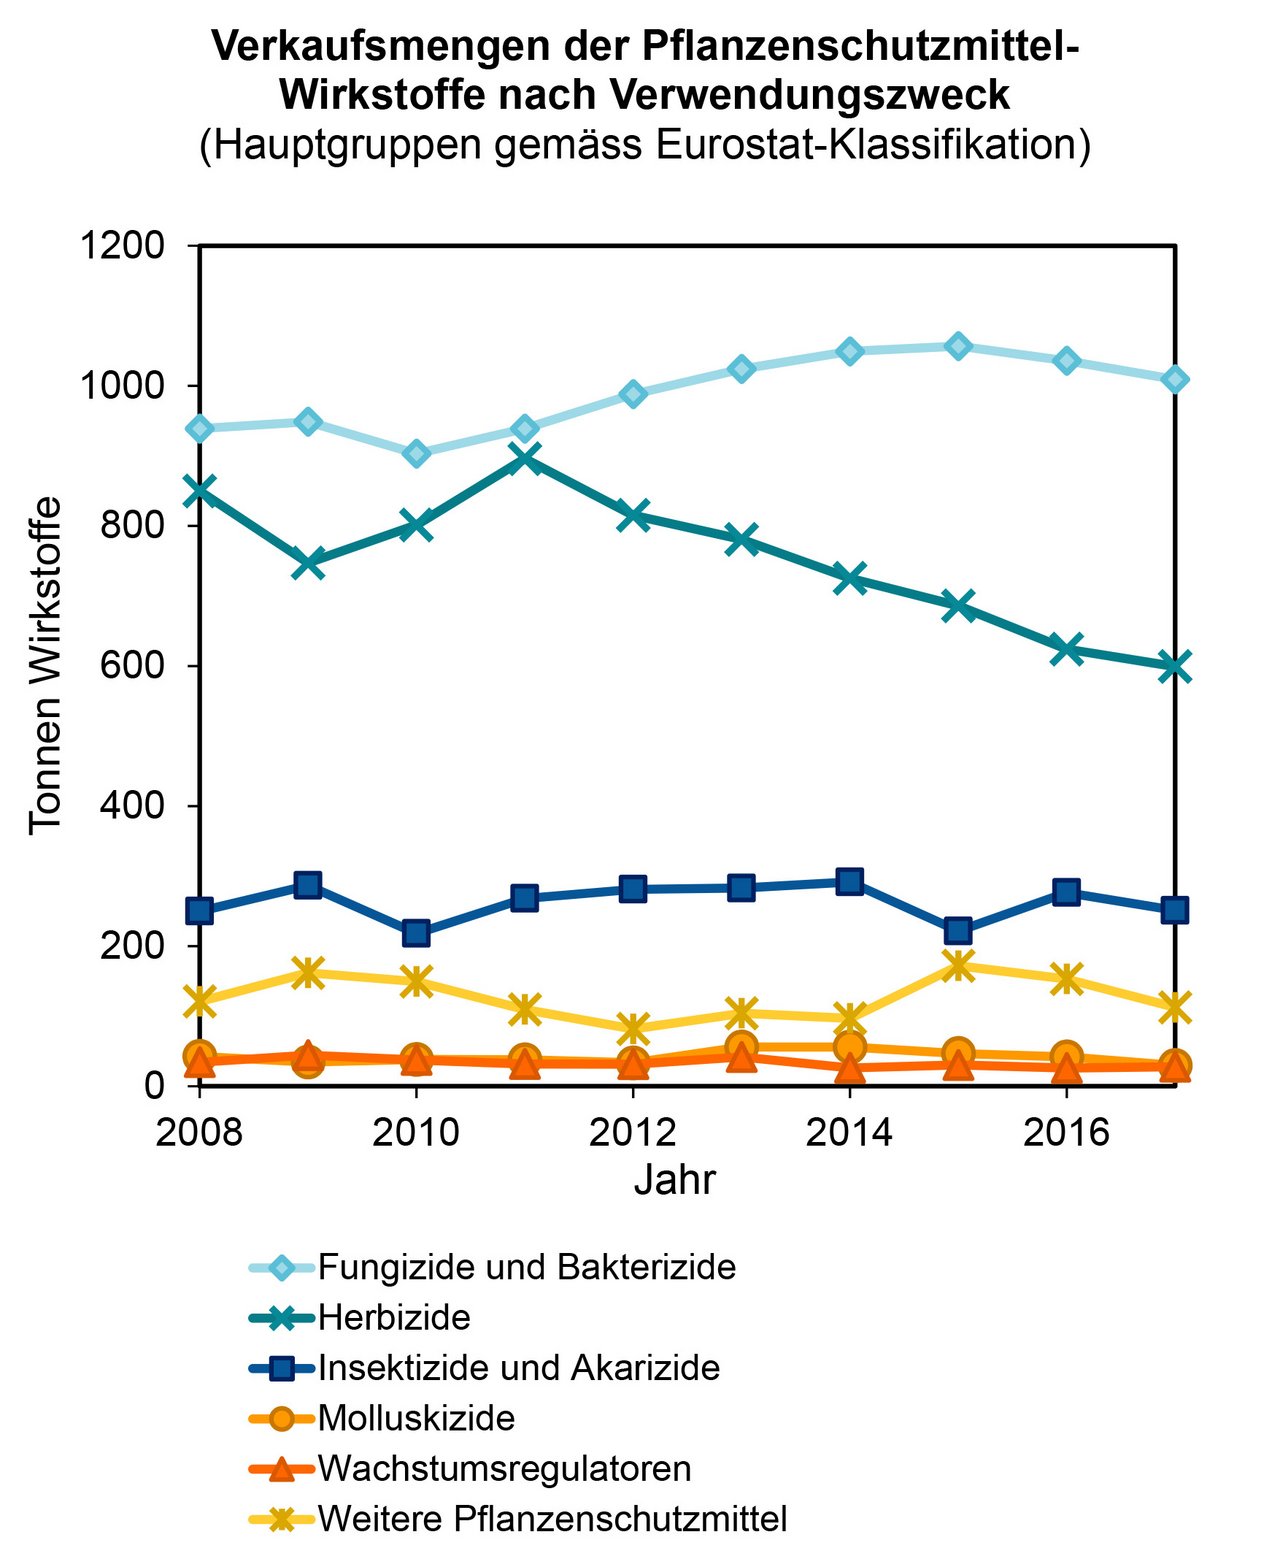 Besonders deutlich sind Herbizide und speziell Glyphosat (-45 Prozent gegenüber 2008) zurückgegangen. Die anderen Hauptgruppen zeigen über die Jahre keine deutliche Änderung. (Grafik BLW)